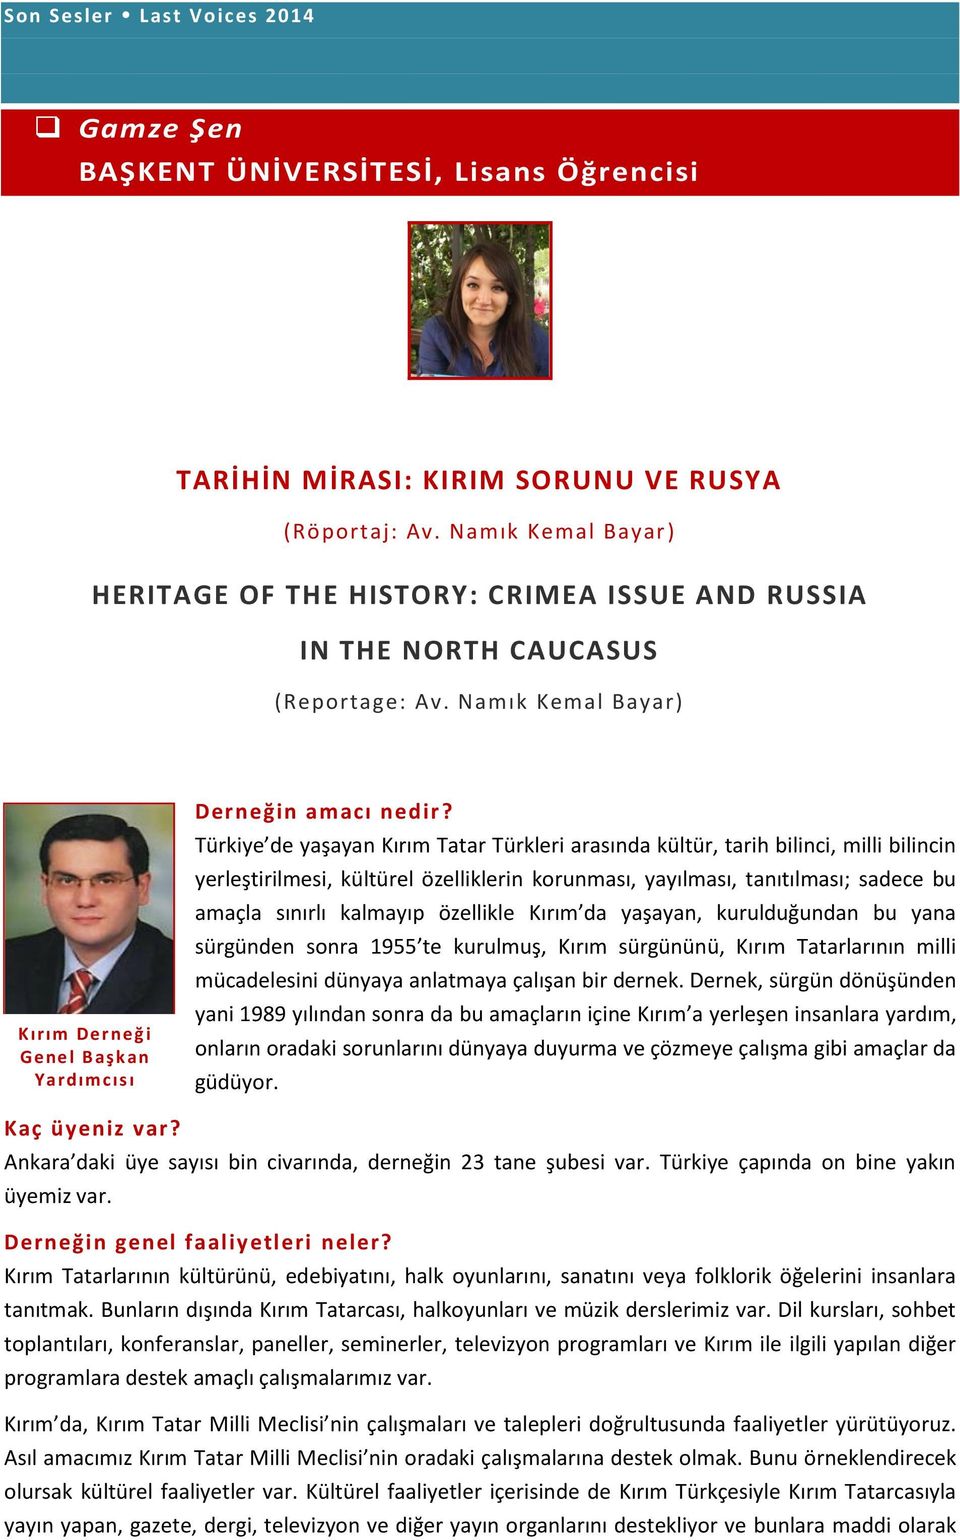 Türkiye de yaşayan Kırım Tatar Türkleri arasında kültür, tarih bilinci, milli bilincin yerleştirilmesi, kültürel özelliklerin korunması, yayılması, tanıtılması; sadece bu amaçla sınırlı kalmayıp